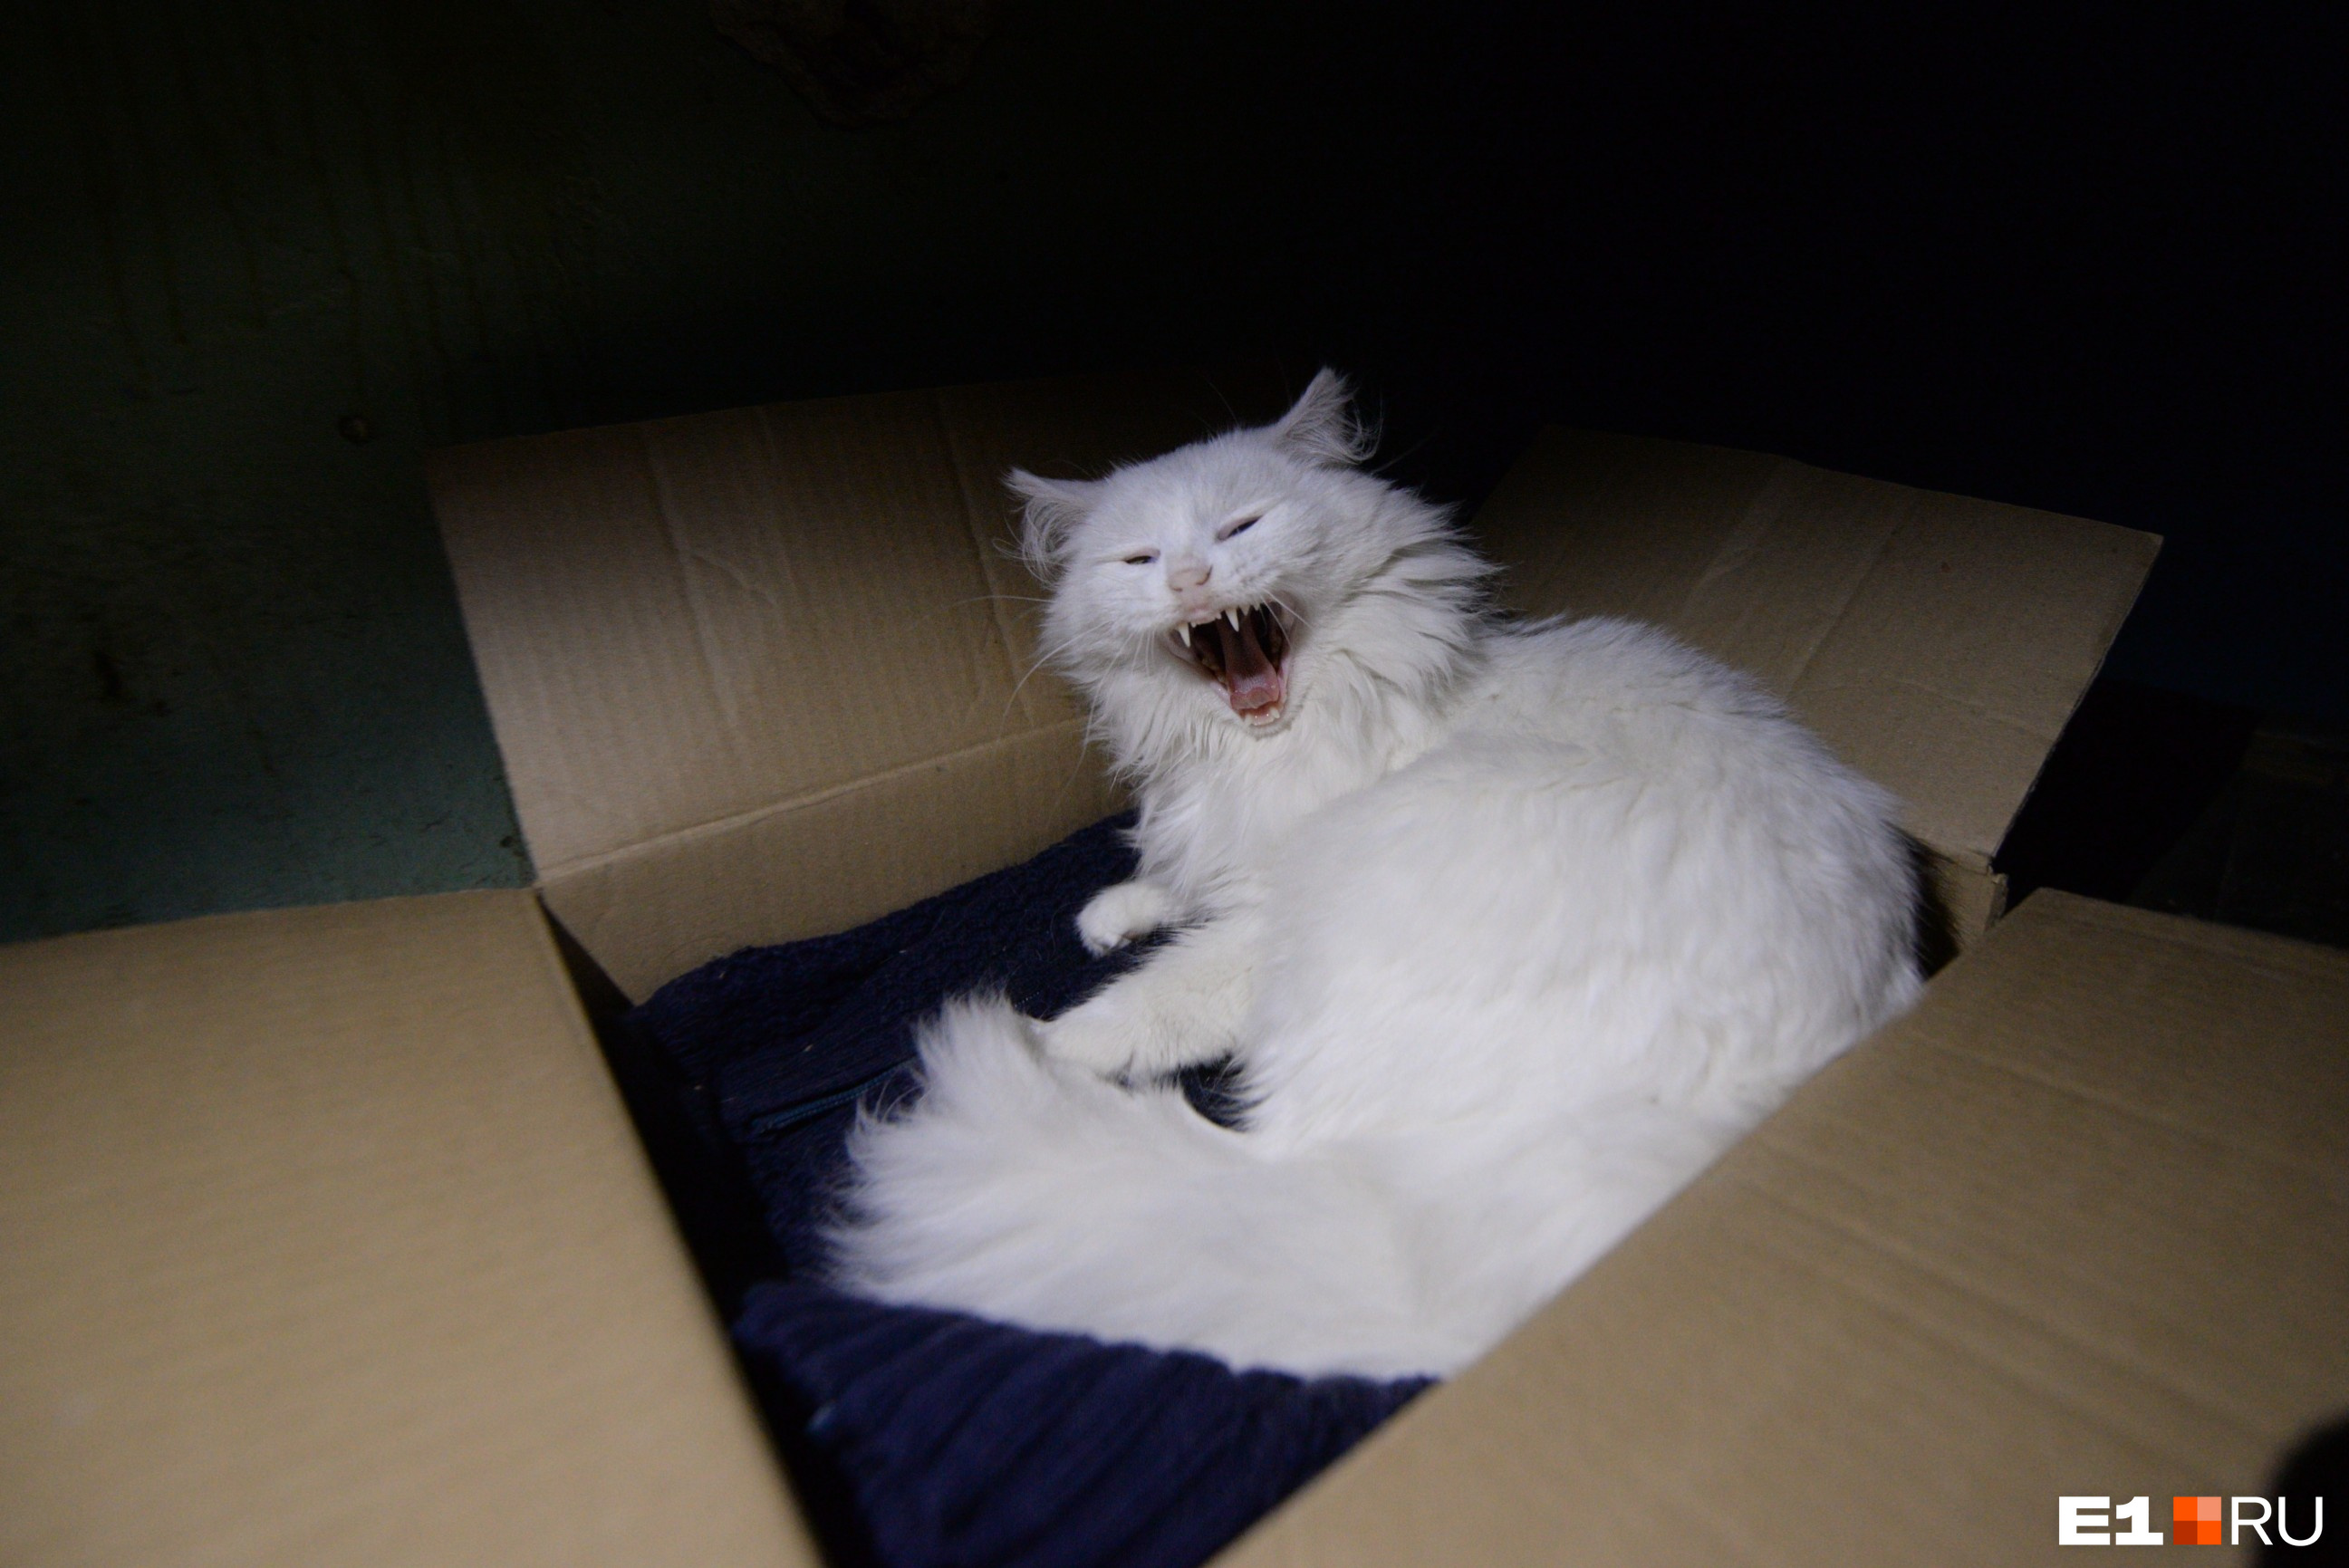 Нас здесь встретила только эта белая зевающая кошка. Она спала на первом этаже